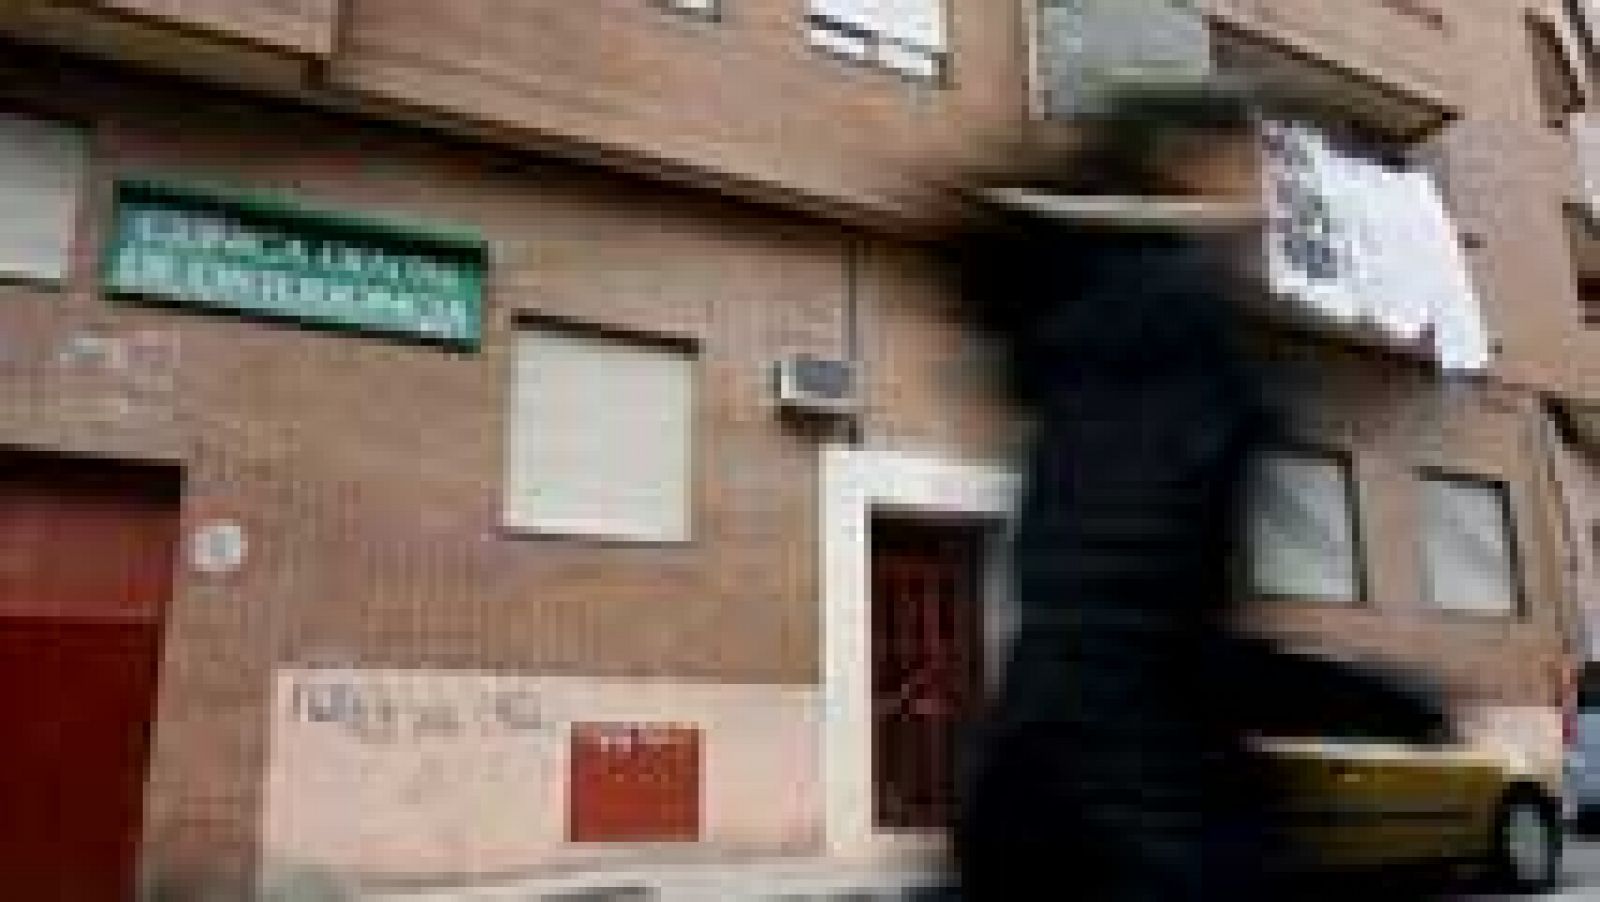 Asesinada una mujer de 44 años en Alcobendas, Madrid